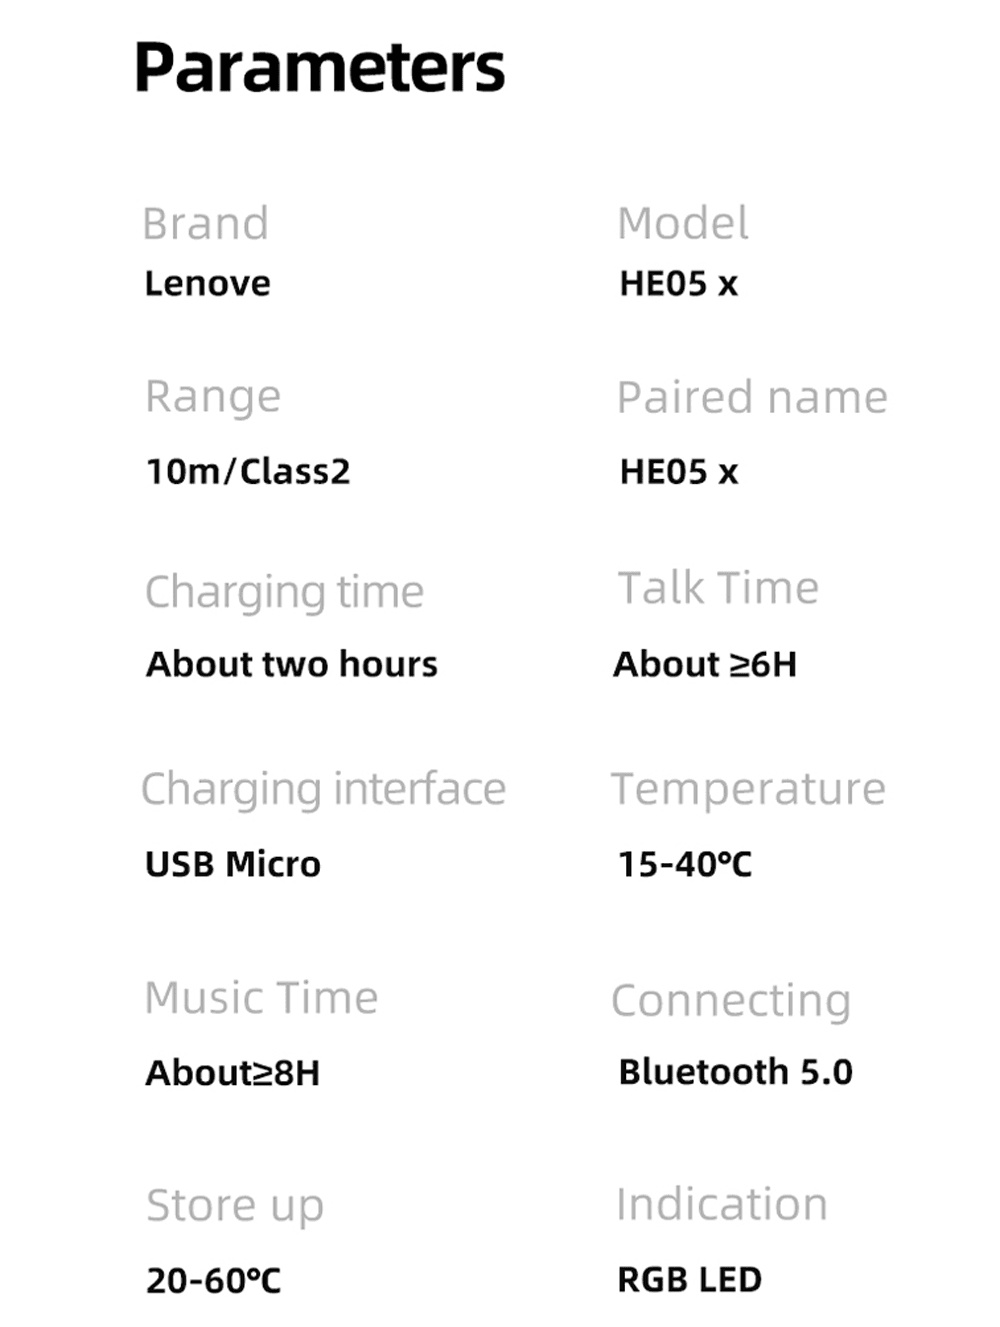 รายละเอียดเพิ่มเติมเกี่ยวกับ Lenovo HE05X  หูฟังบลูทูธไร้สาย Bluetooth 5.0 And Ipx5 Waterproof